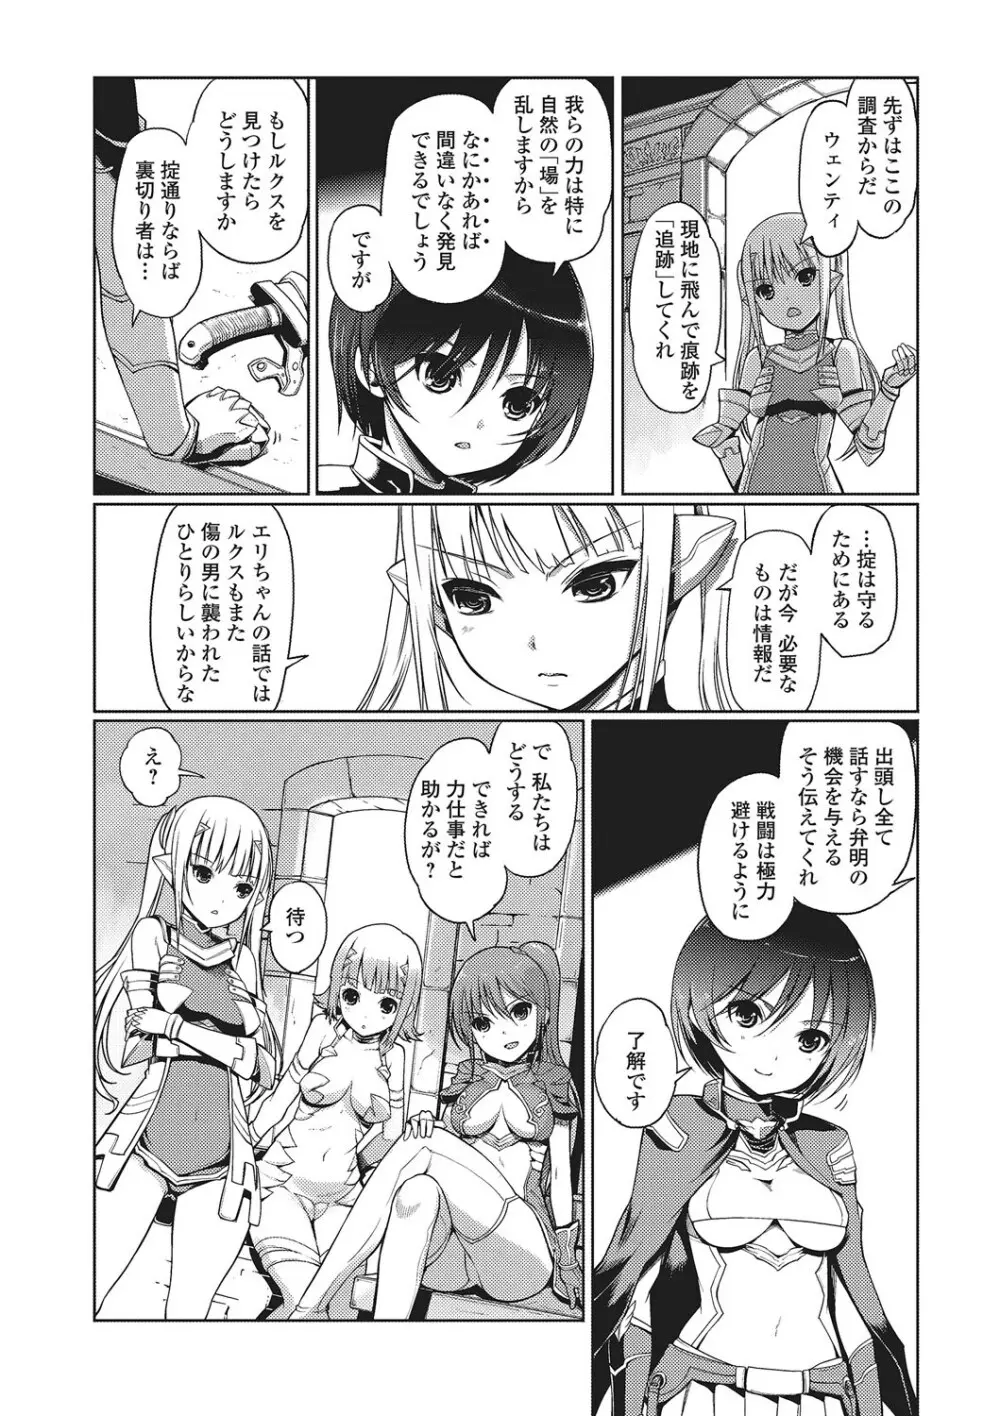 ダークレグナム ～異端幻想～ 141ページ